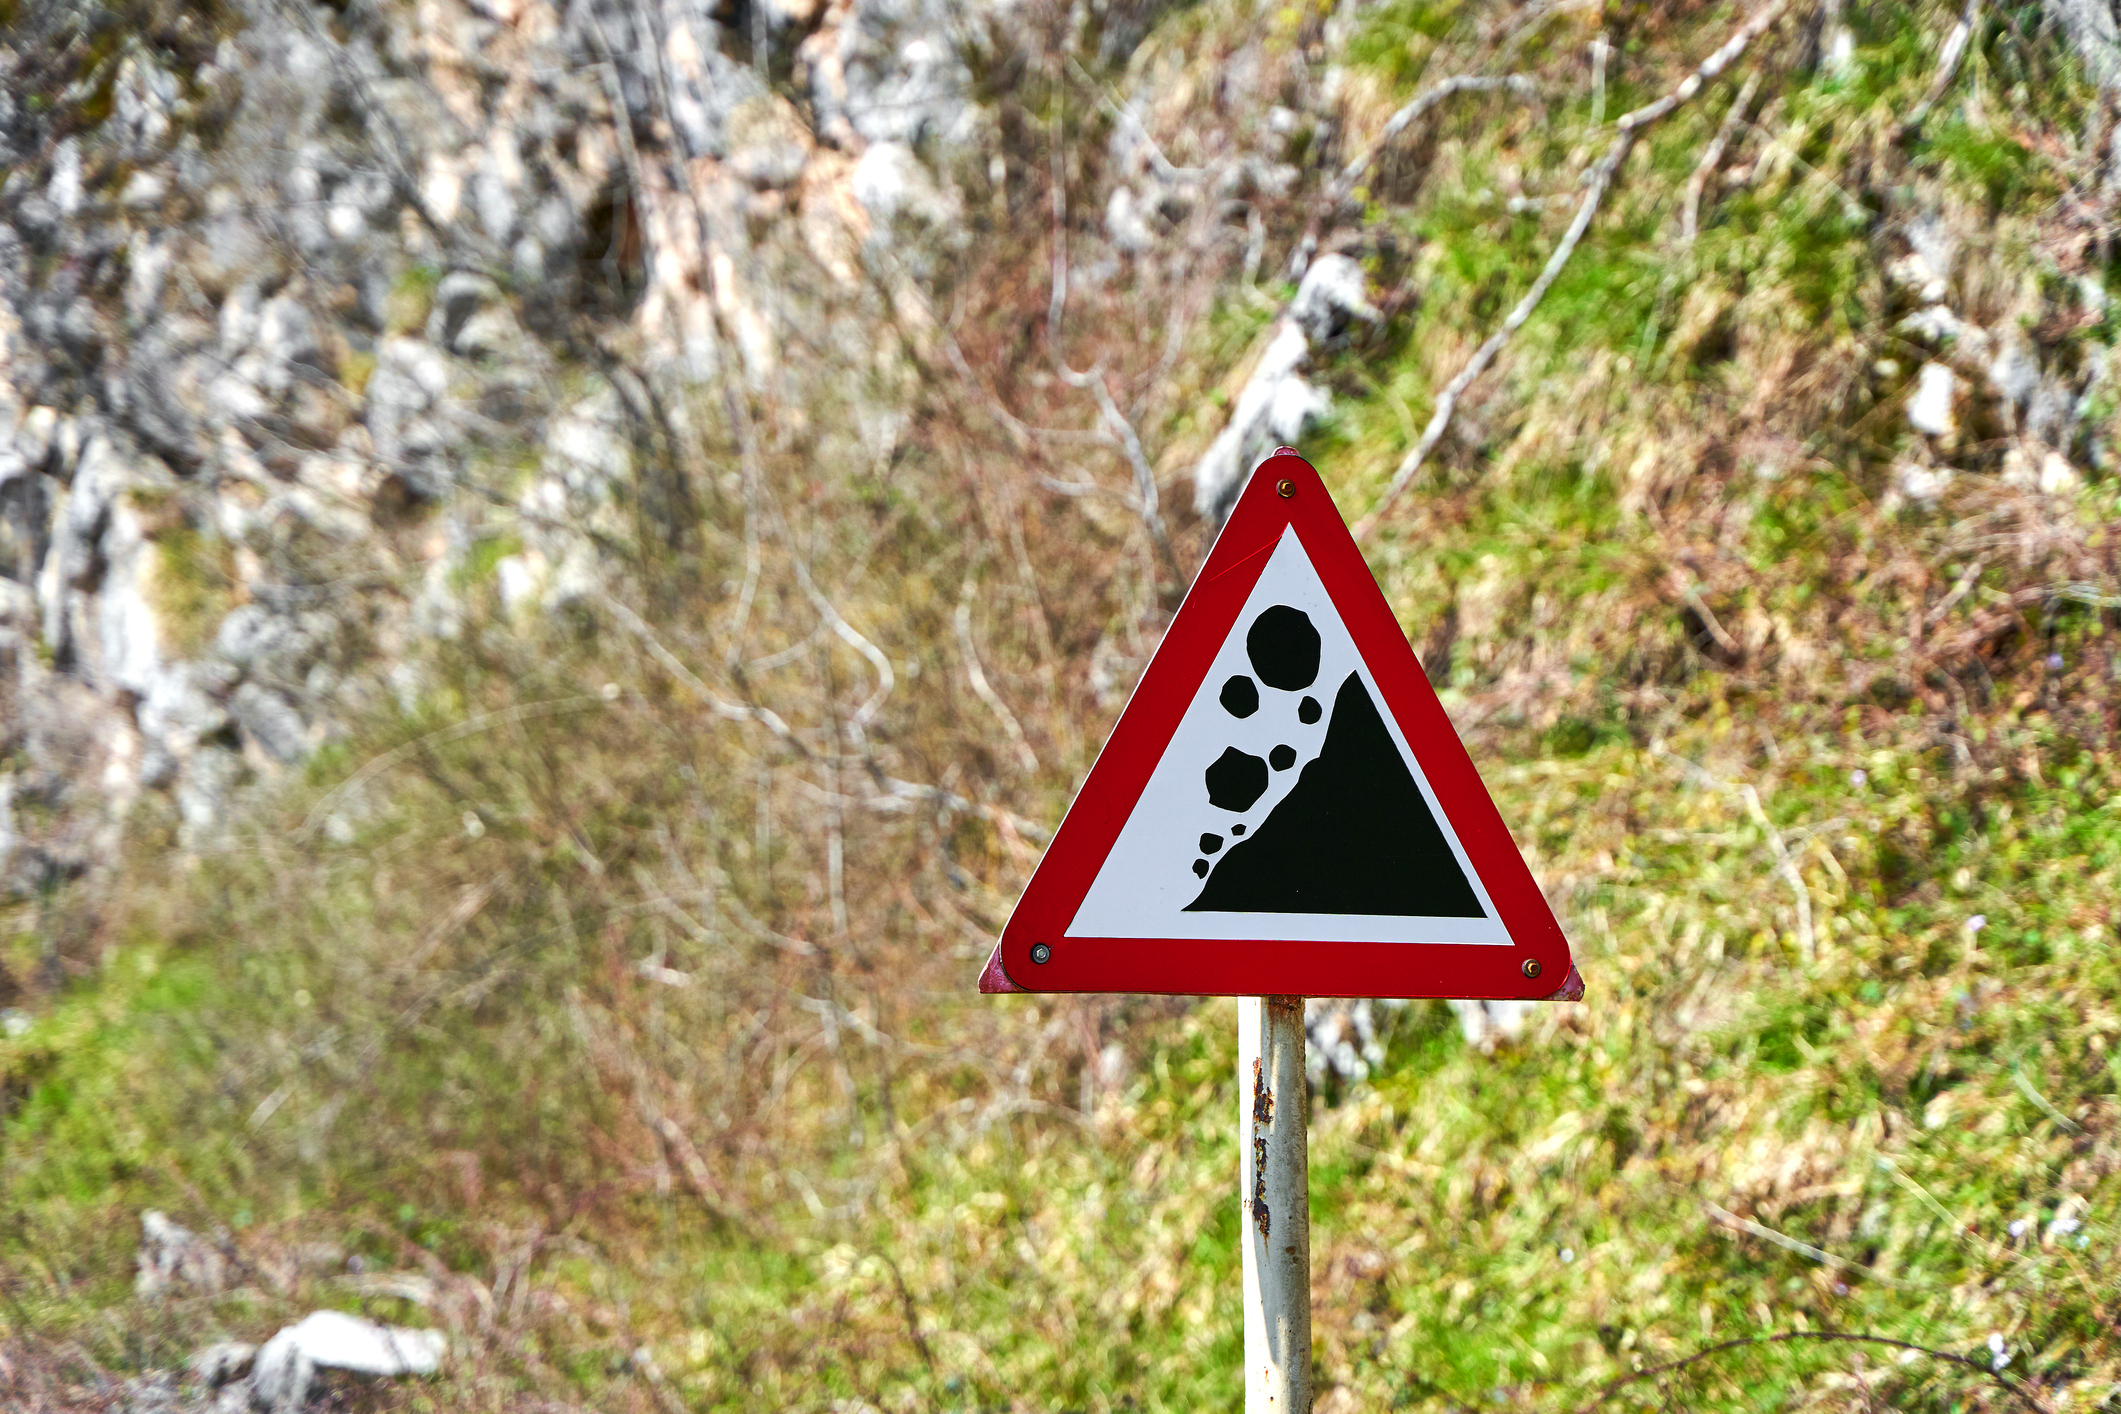 Foto horizontal de placa com aviso de risco de desabamento, nas cores prta e vermelha, e ao fundo, imagem de barreira com mato.